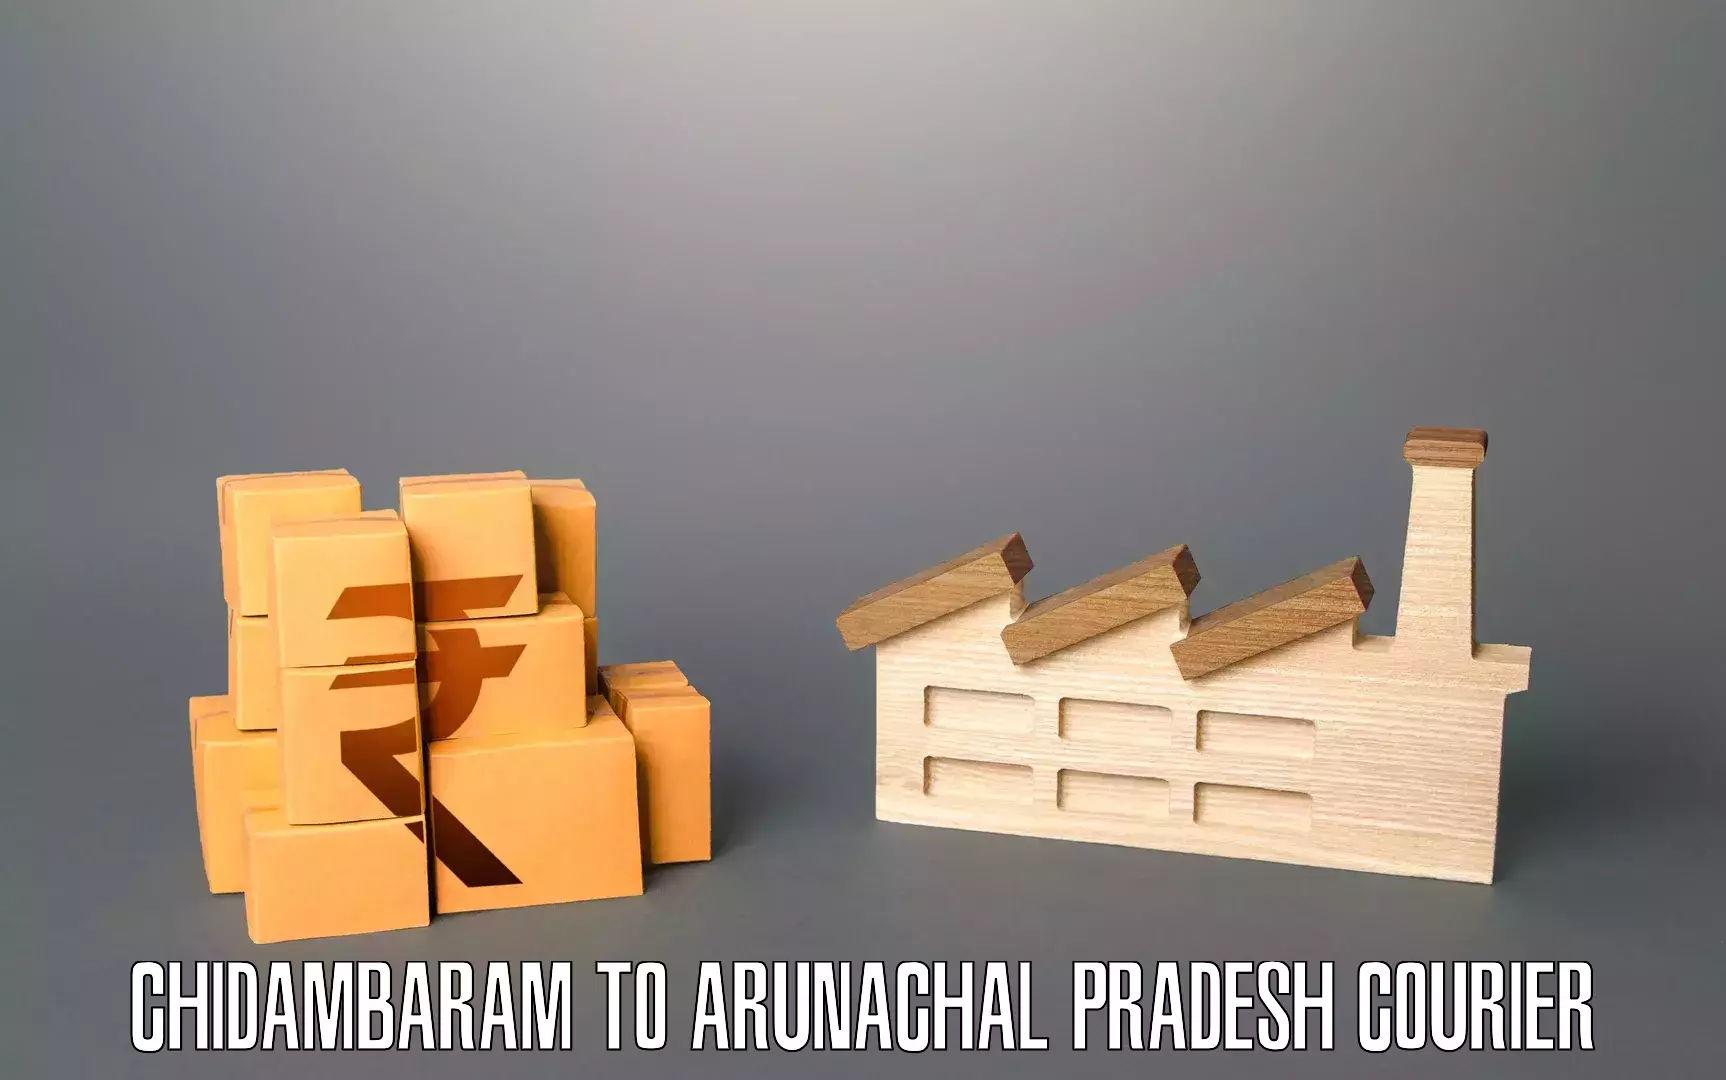 Professional movers and packers Chidambaram to Arunachal Pradesh